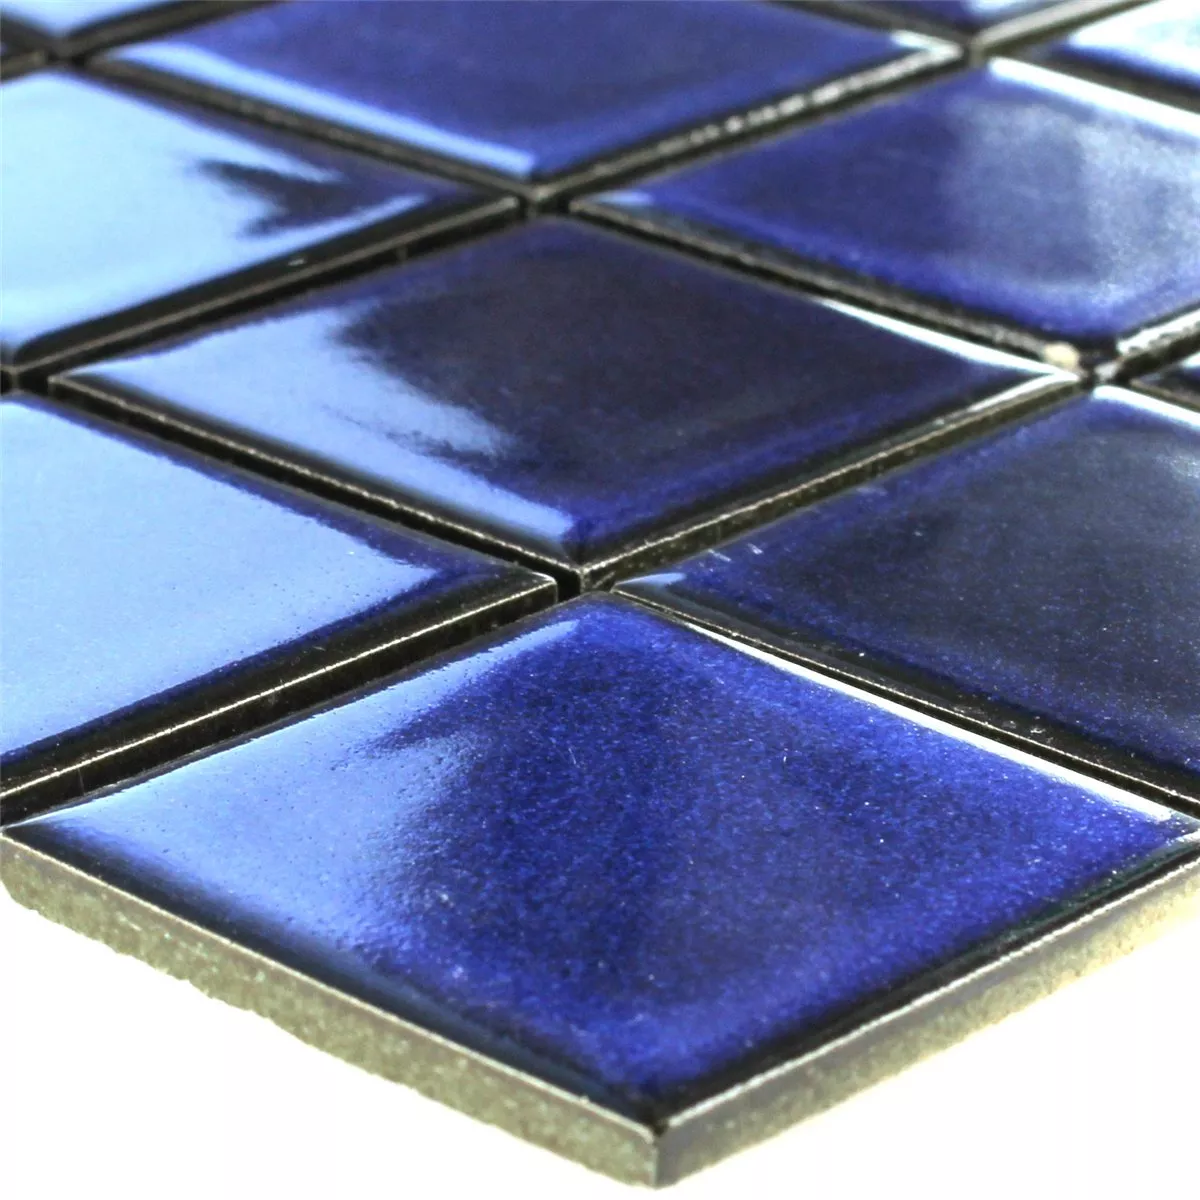 Sample Mosaic Tiles CeramicMirror Blue Uni